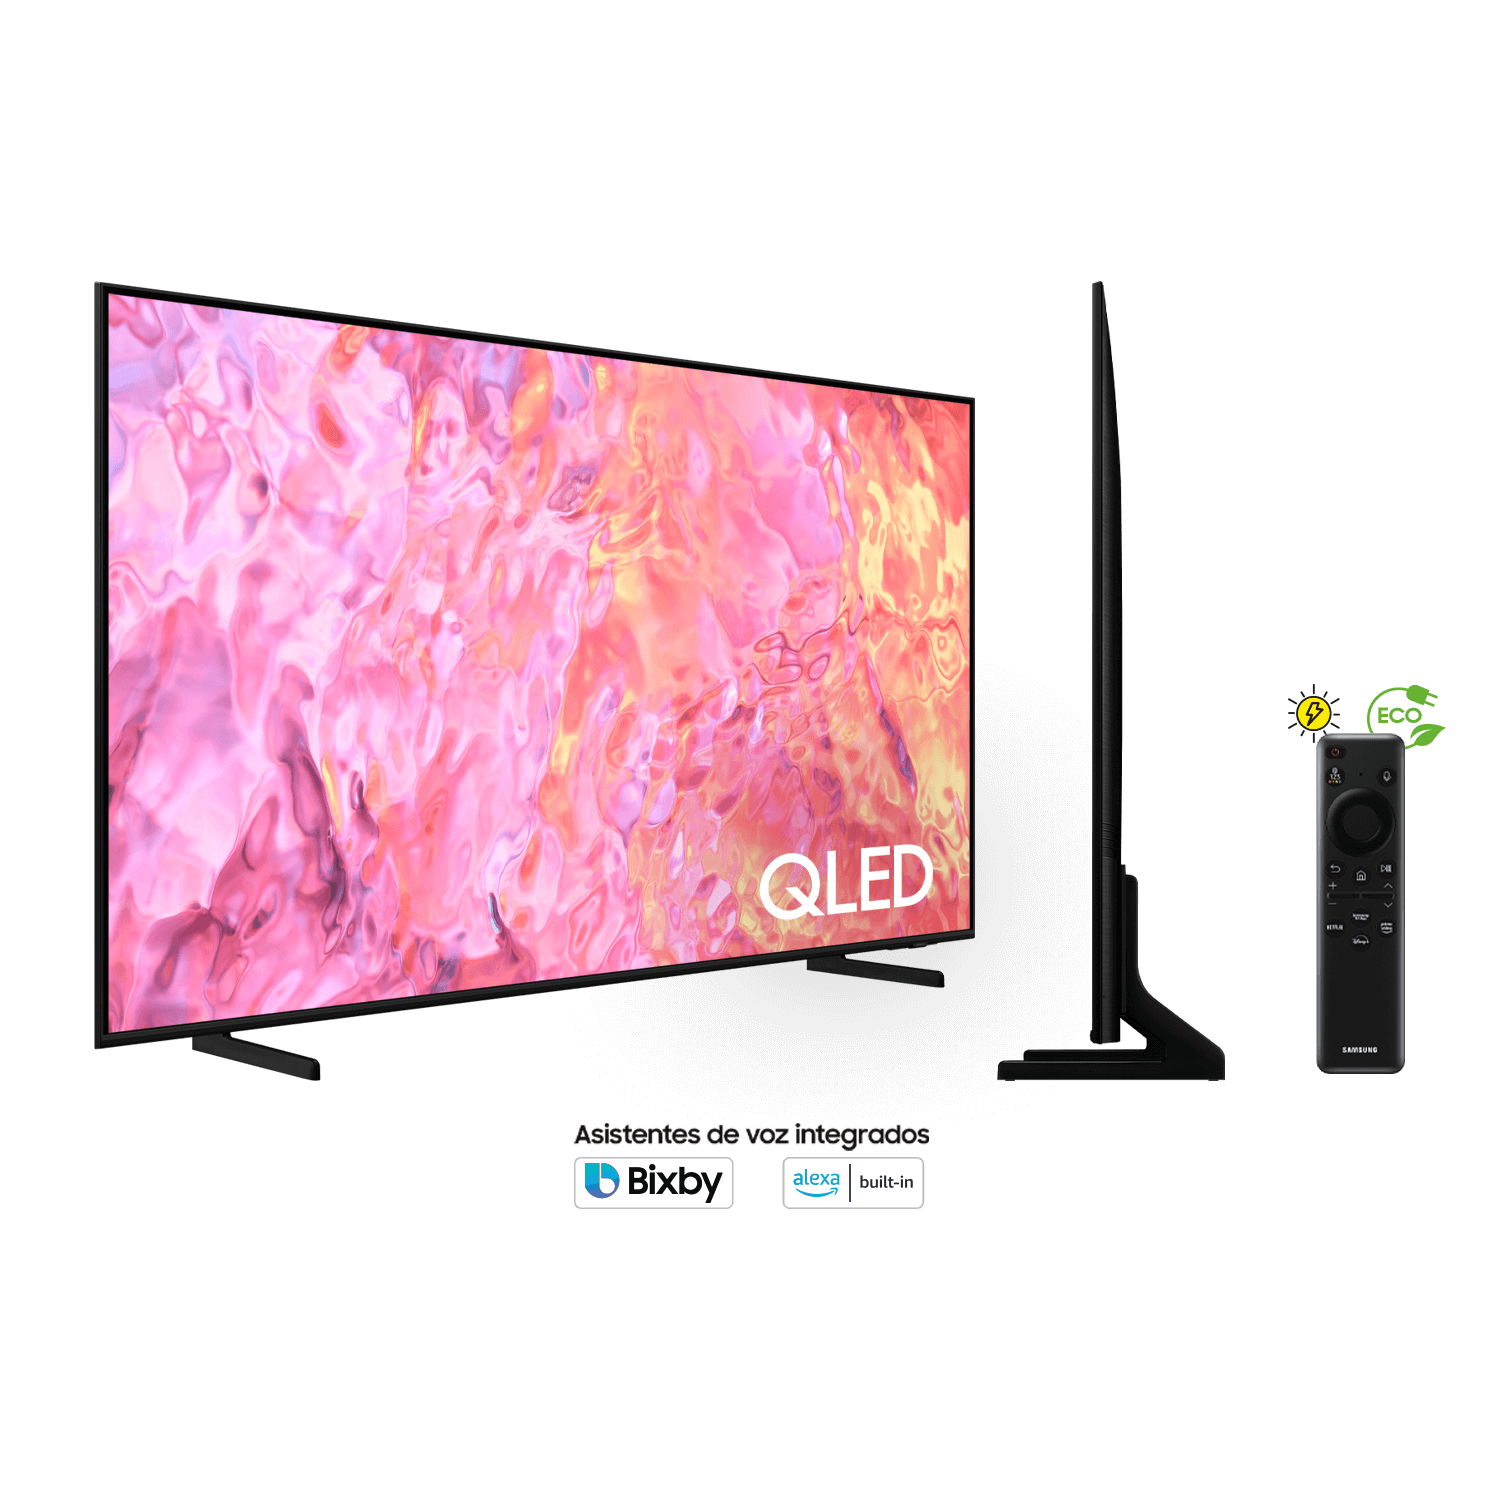 QLED es la nueva tecnología en televisores de Samsung que busca